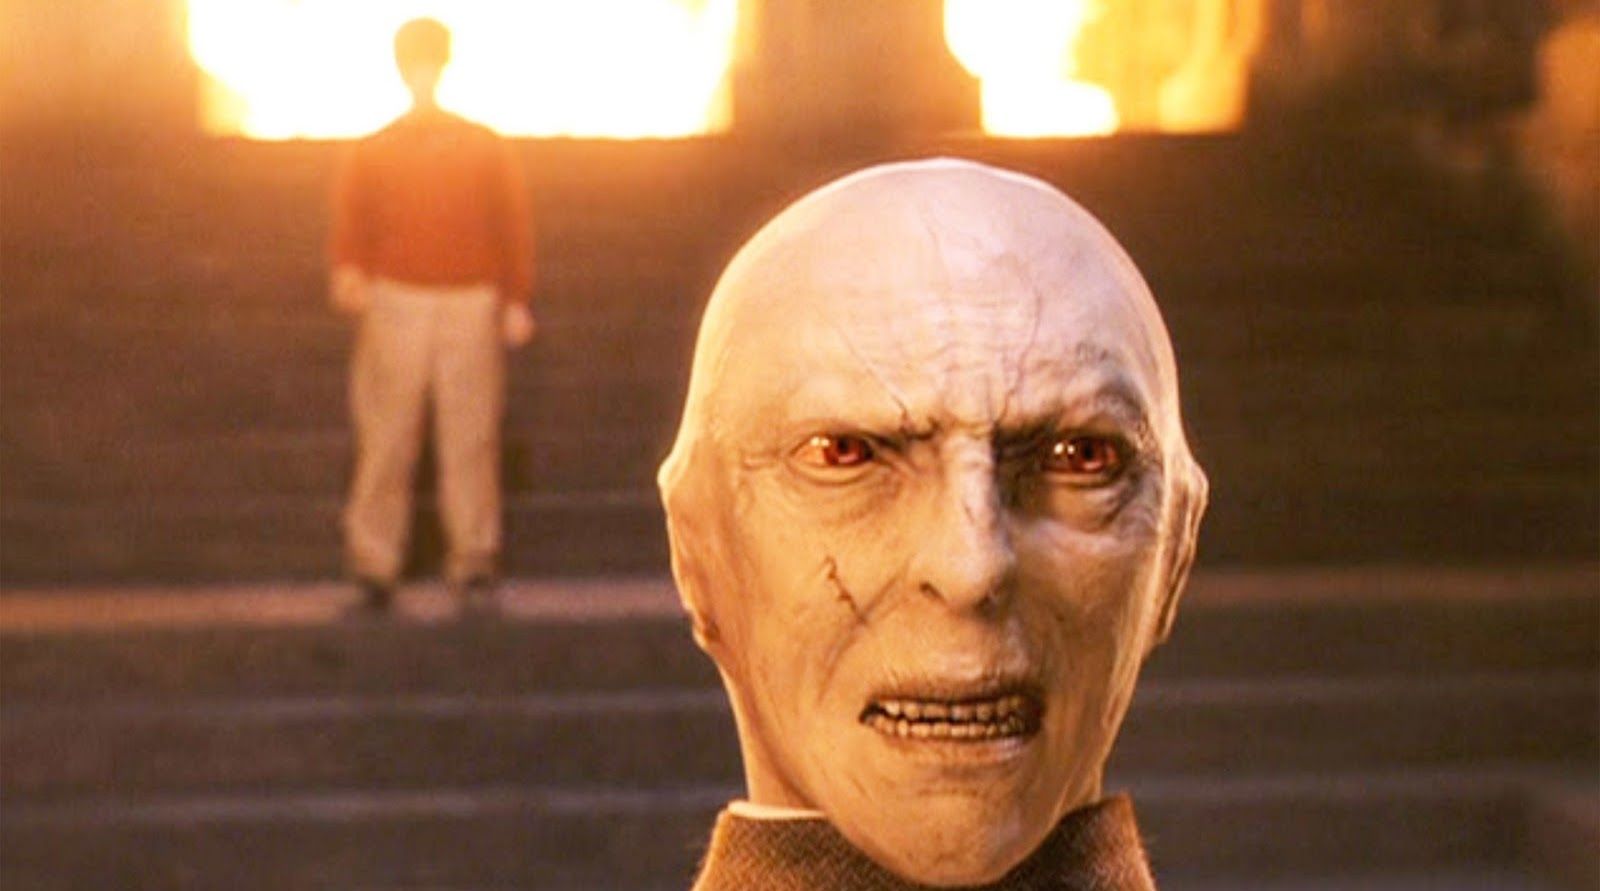 Voldemort on Professor Quirrels head